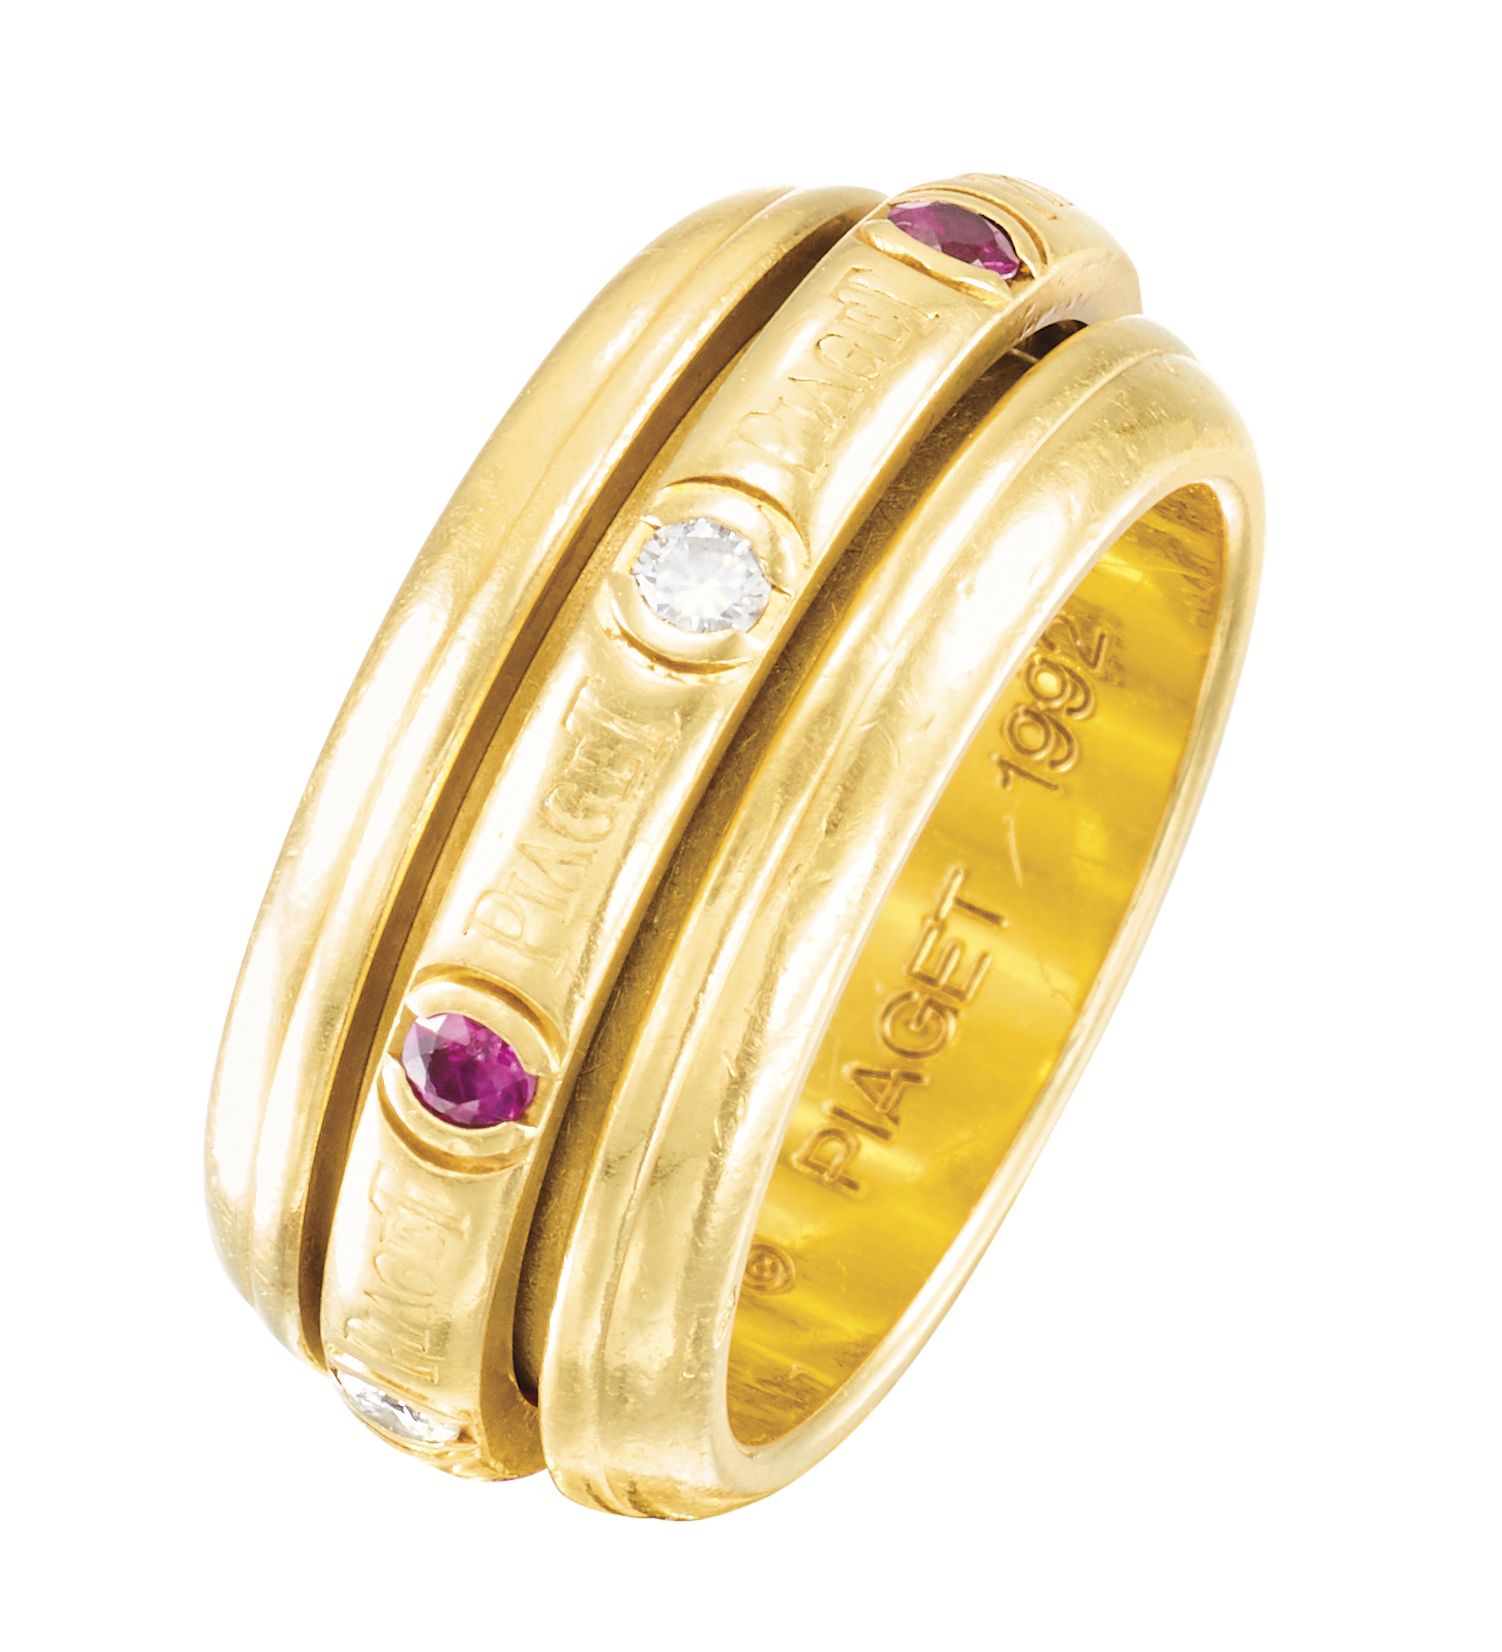 PIAGET Collezione "Possession
Anello girevole in oro giallo, con anello centrale&hellip;